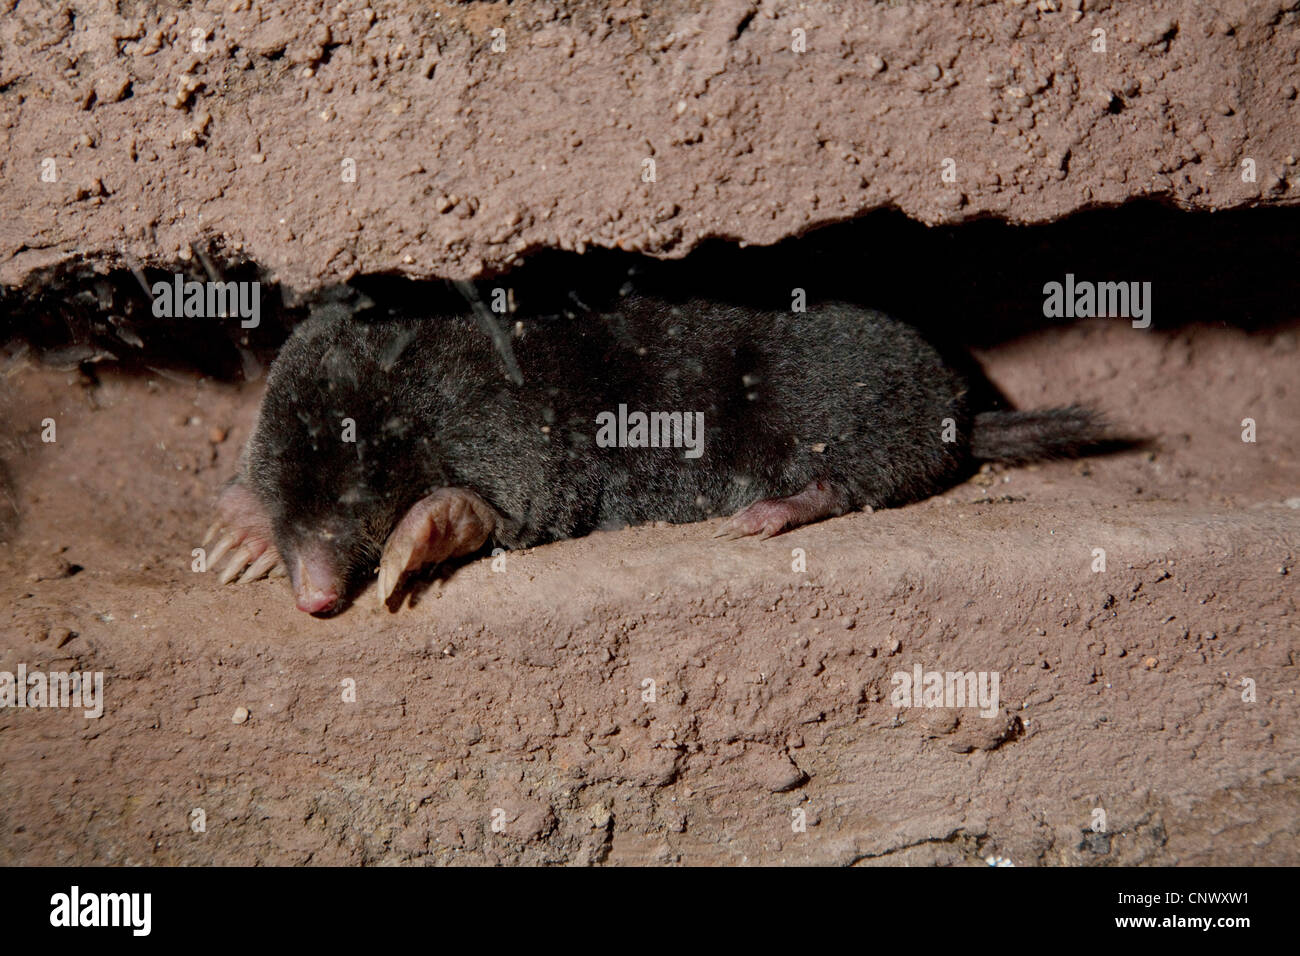 Unione mole (Talpa europaea), in tunnel subterraneous Foto Stock